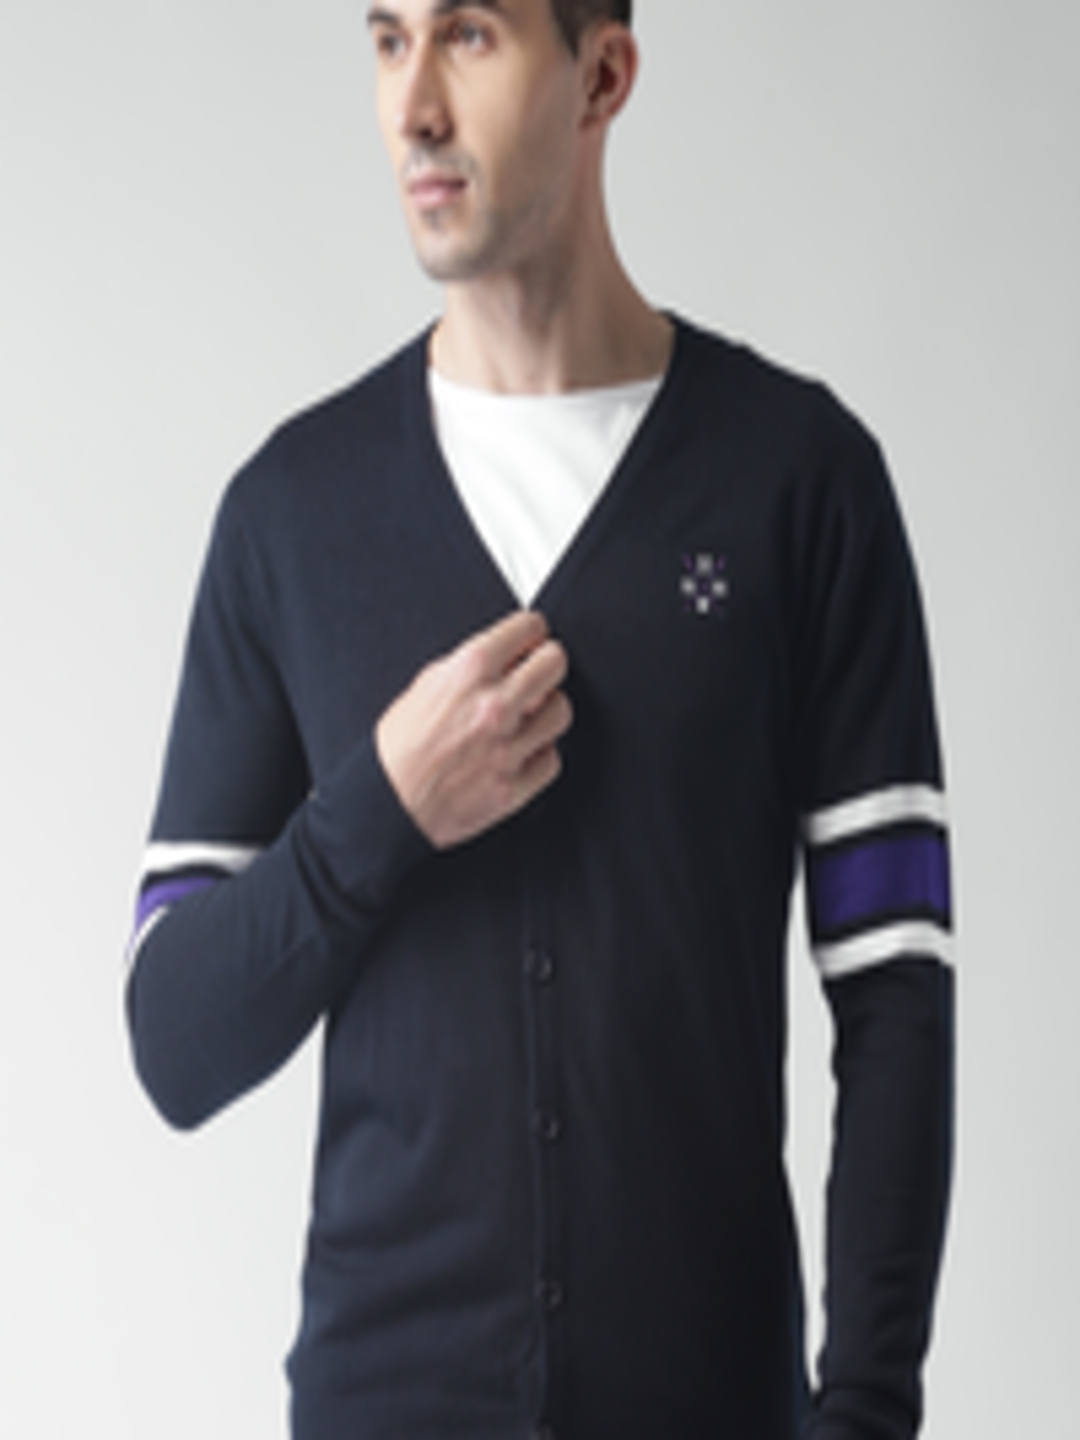 Buy Harvard Men Navy Blue Solid Cardigan - Sweaters for Men 2017327 ...